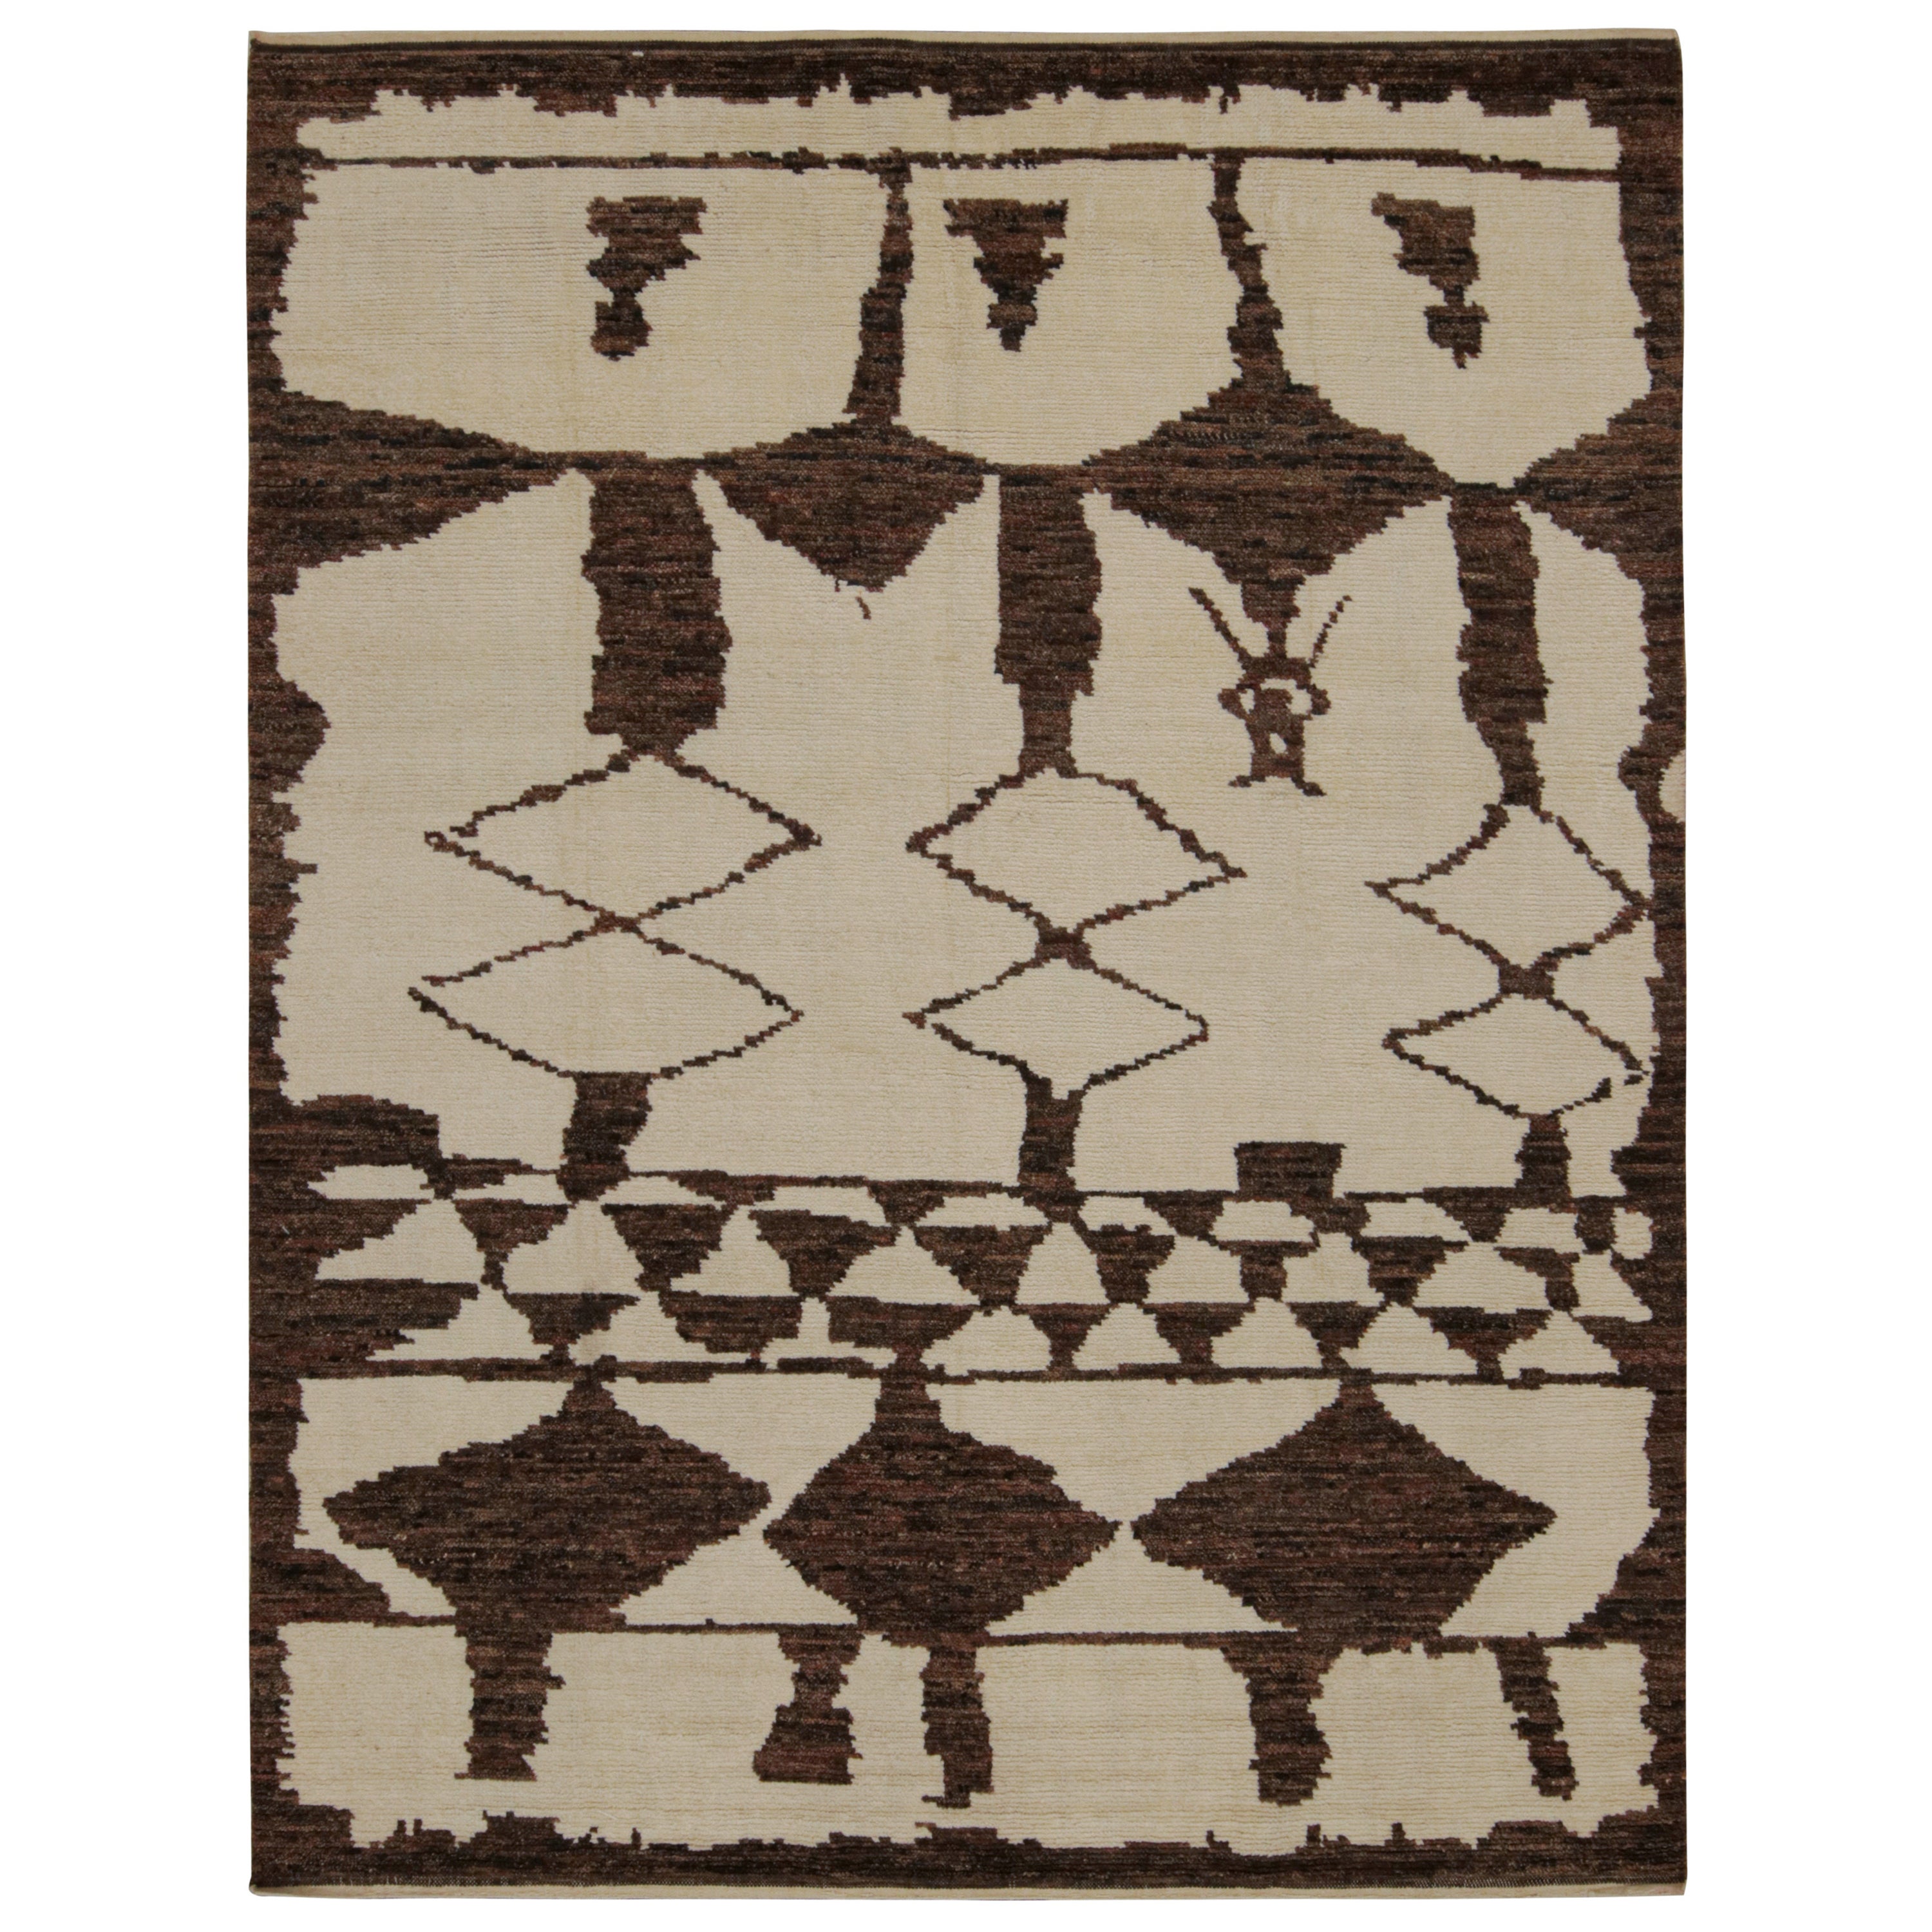 Rug & Kilim's Moroccan Style Rug in Beige and Brown Geometric Patterns (tapis de style marocain à motifs géométriques beige et Brown) en vente